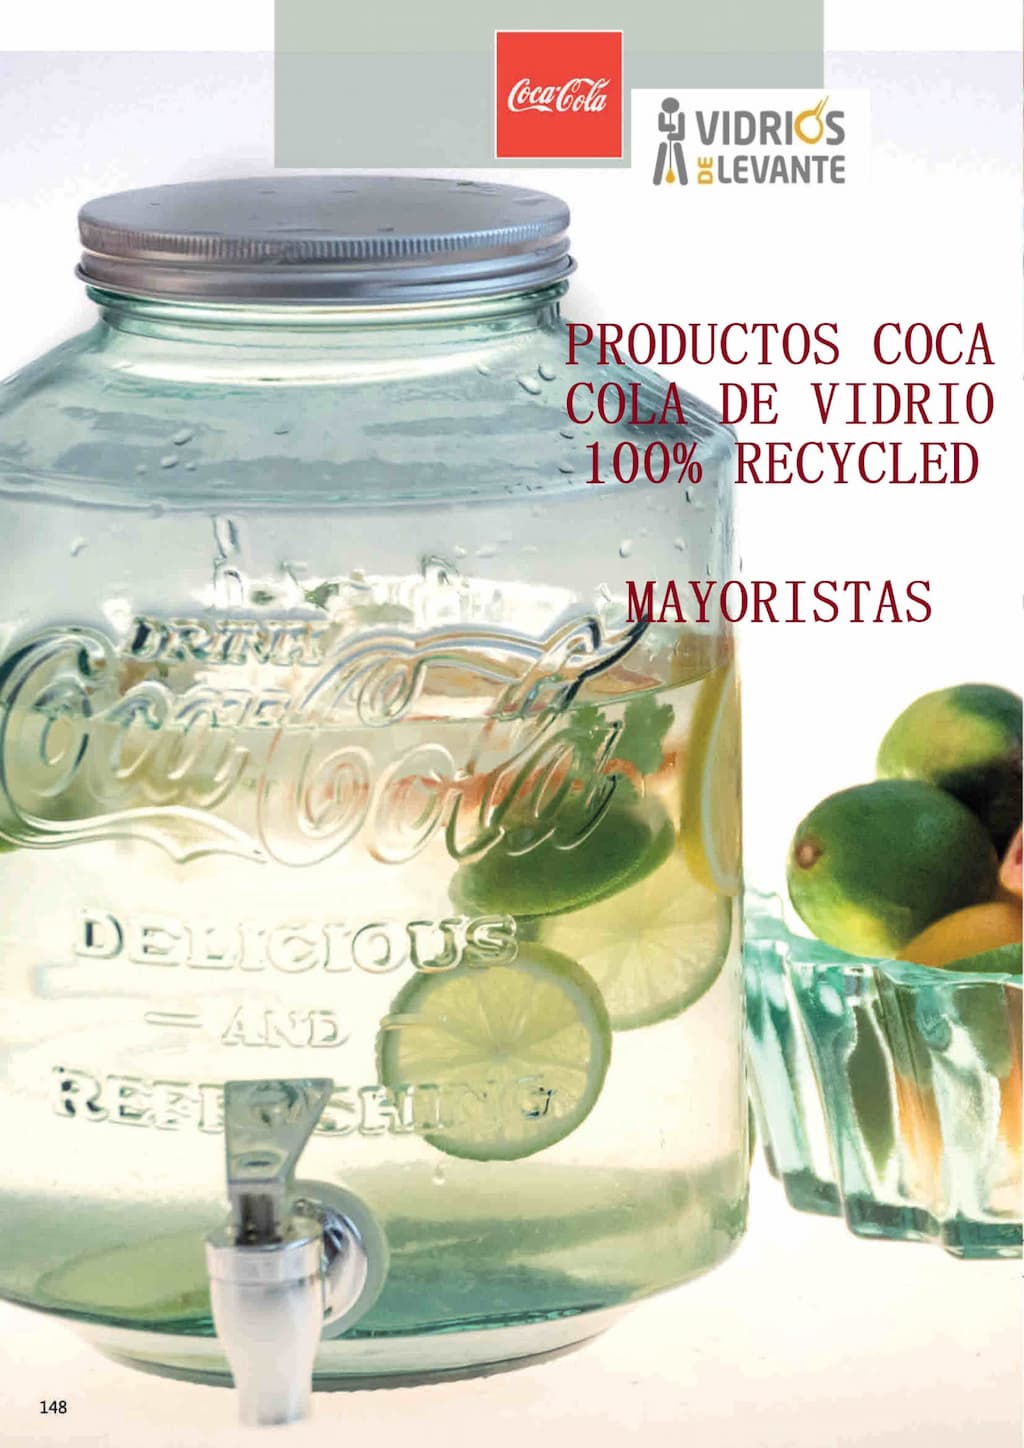 Catálogo Coca Cola vidrio reciclado